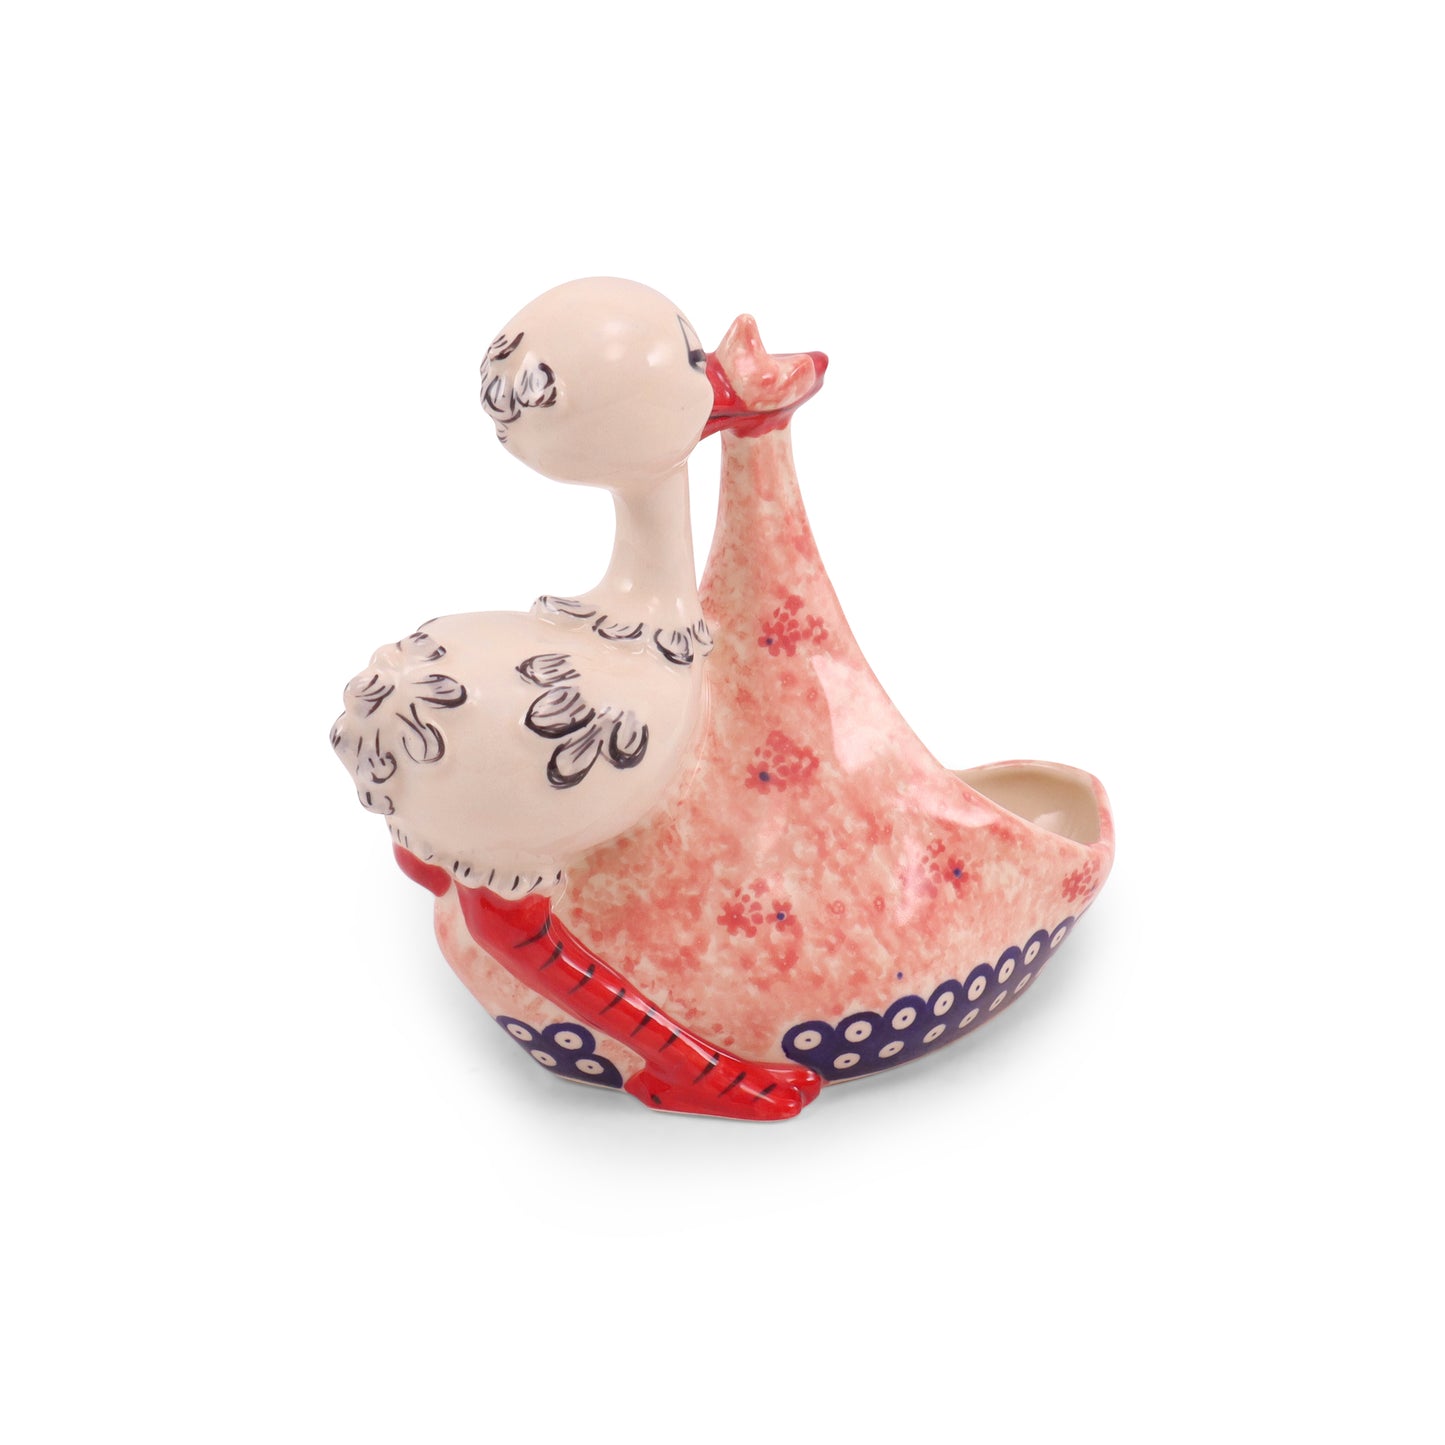 8"x7" Stork Figurine. Pattern: It's a Girl!